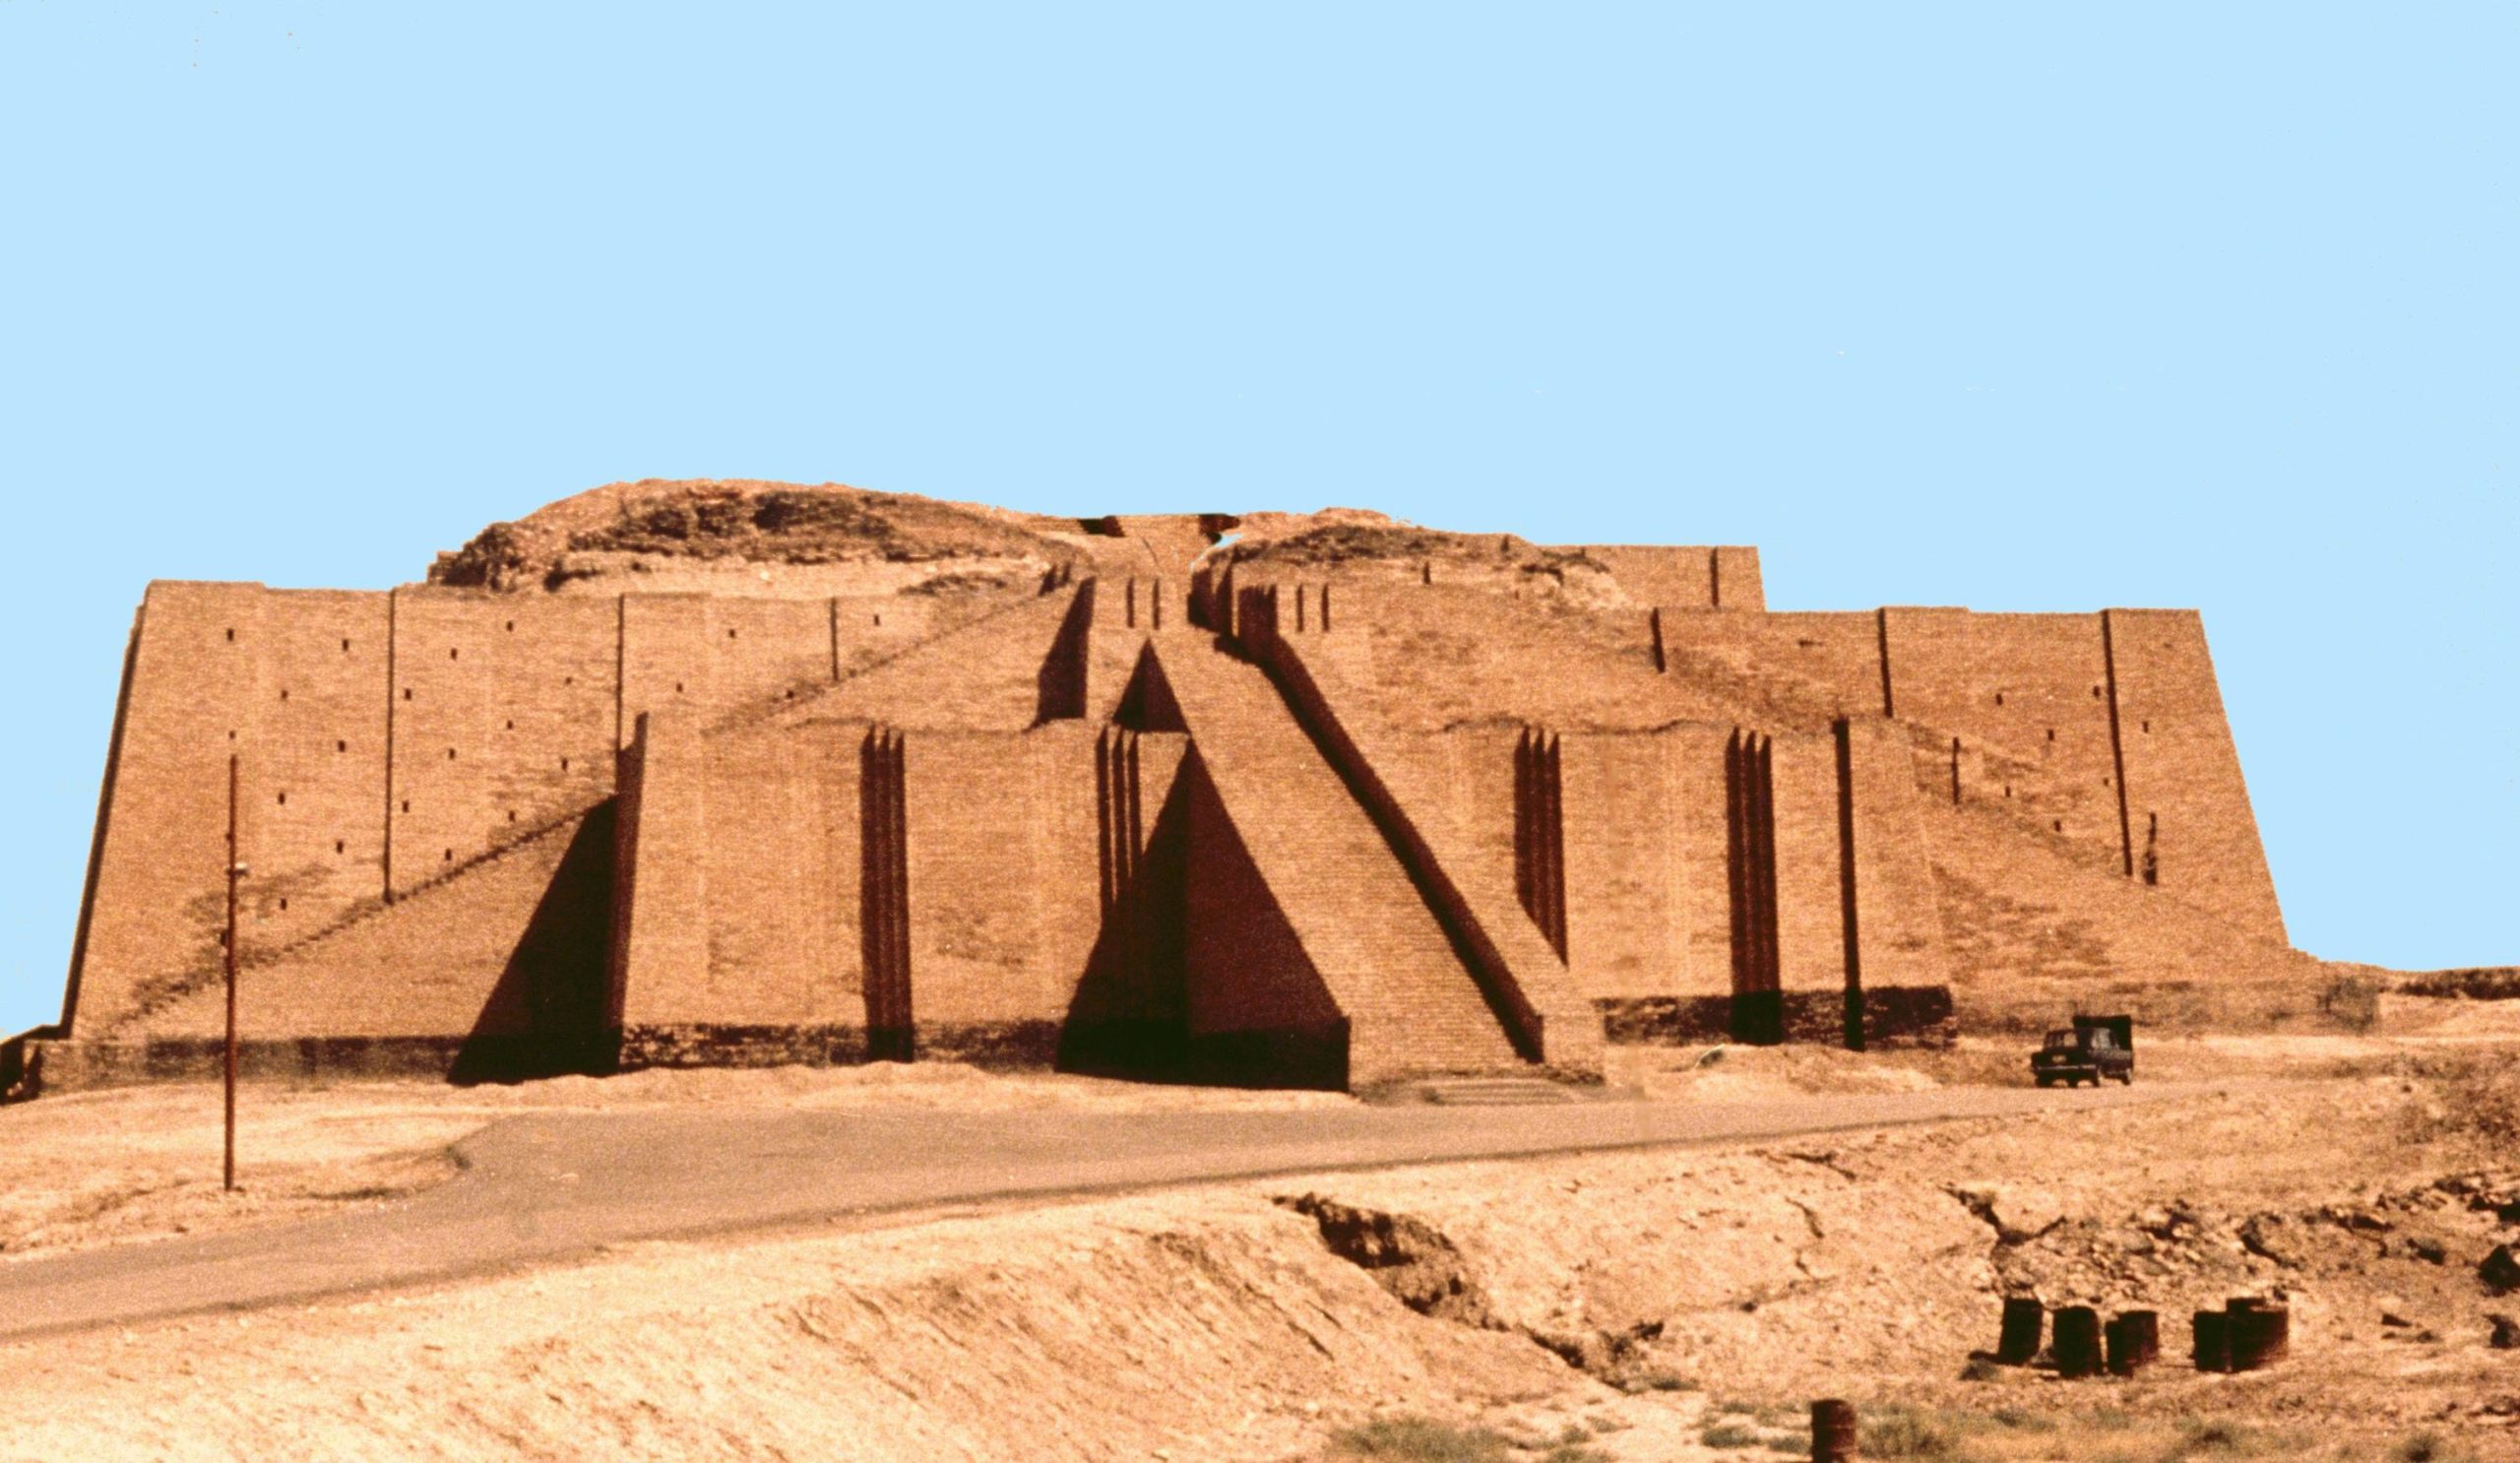 Dessert monument. Reconstructed ziggurat at Ur, Iraq.